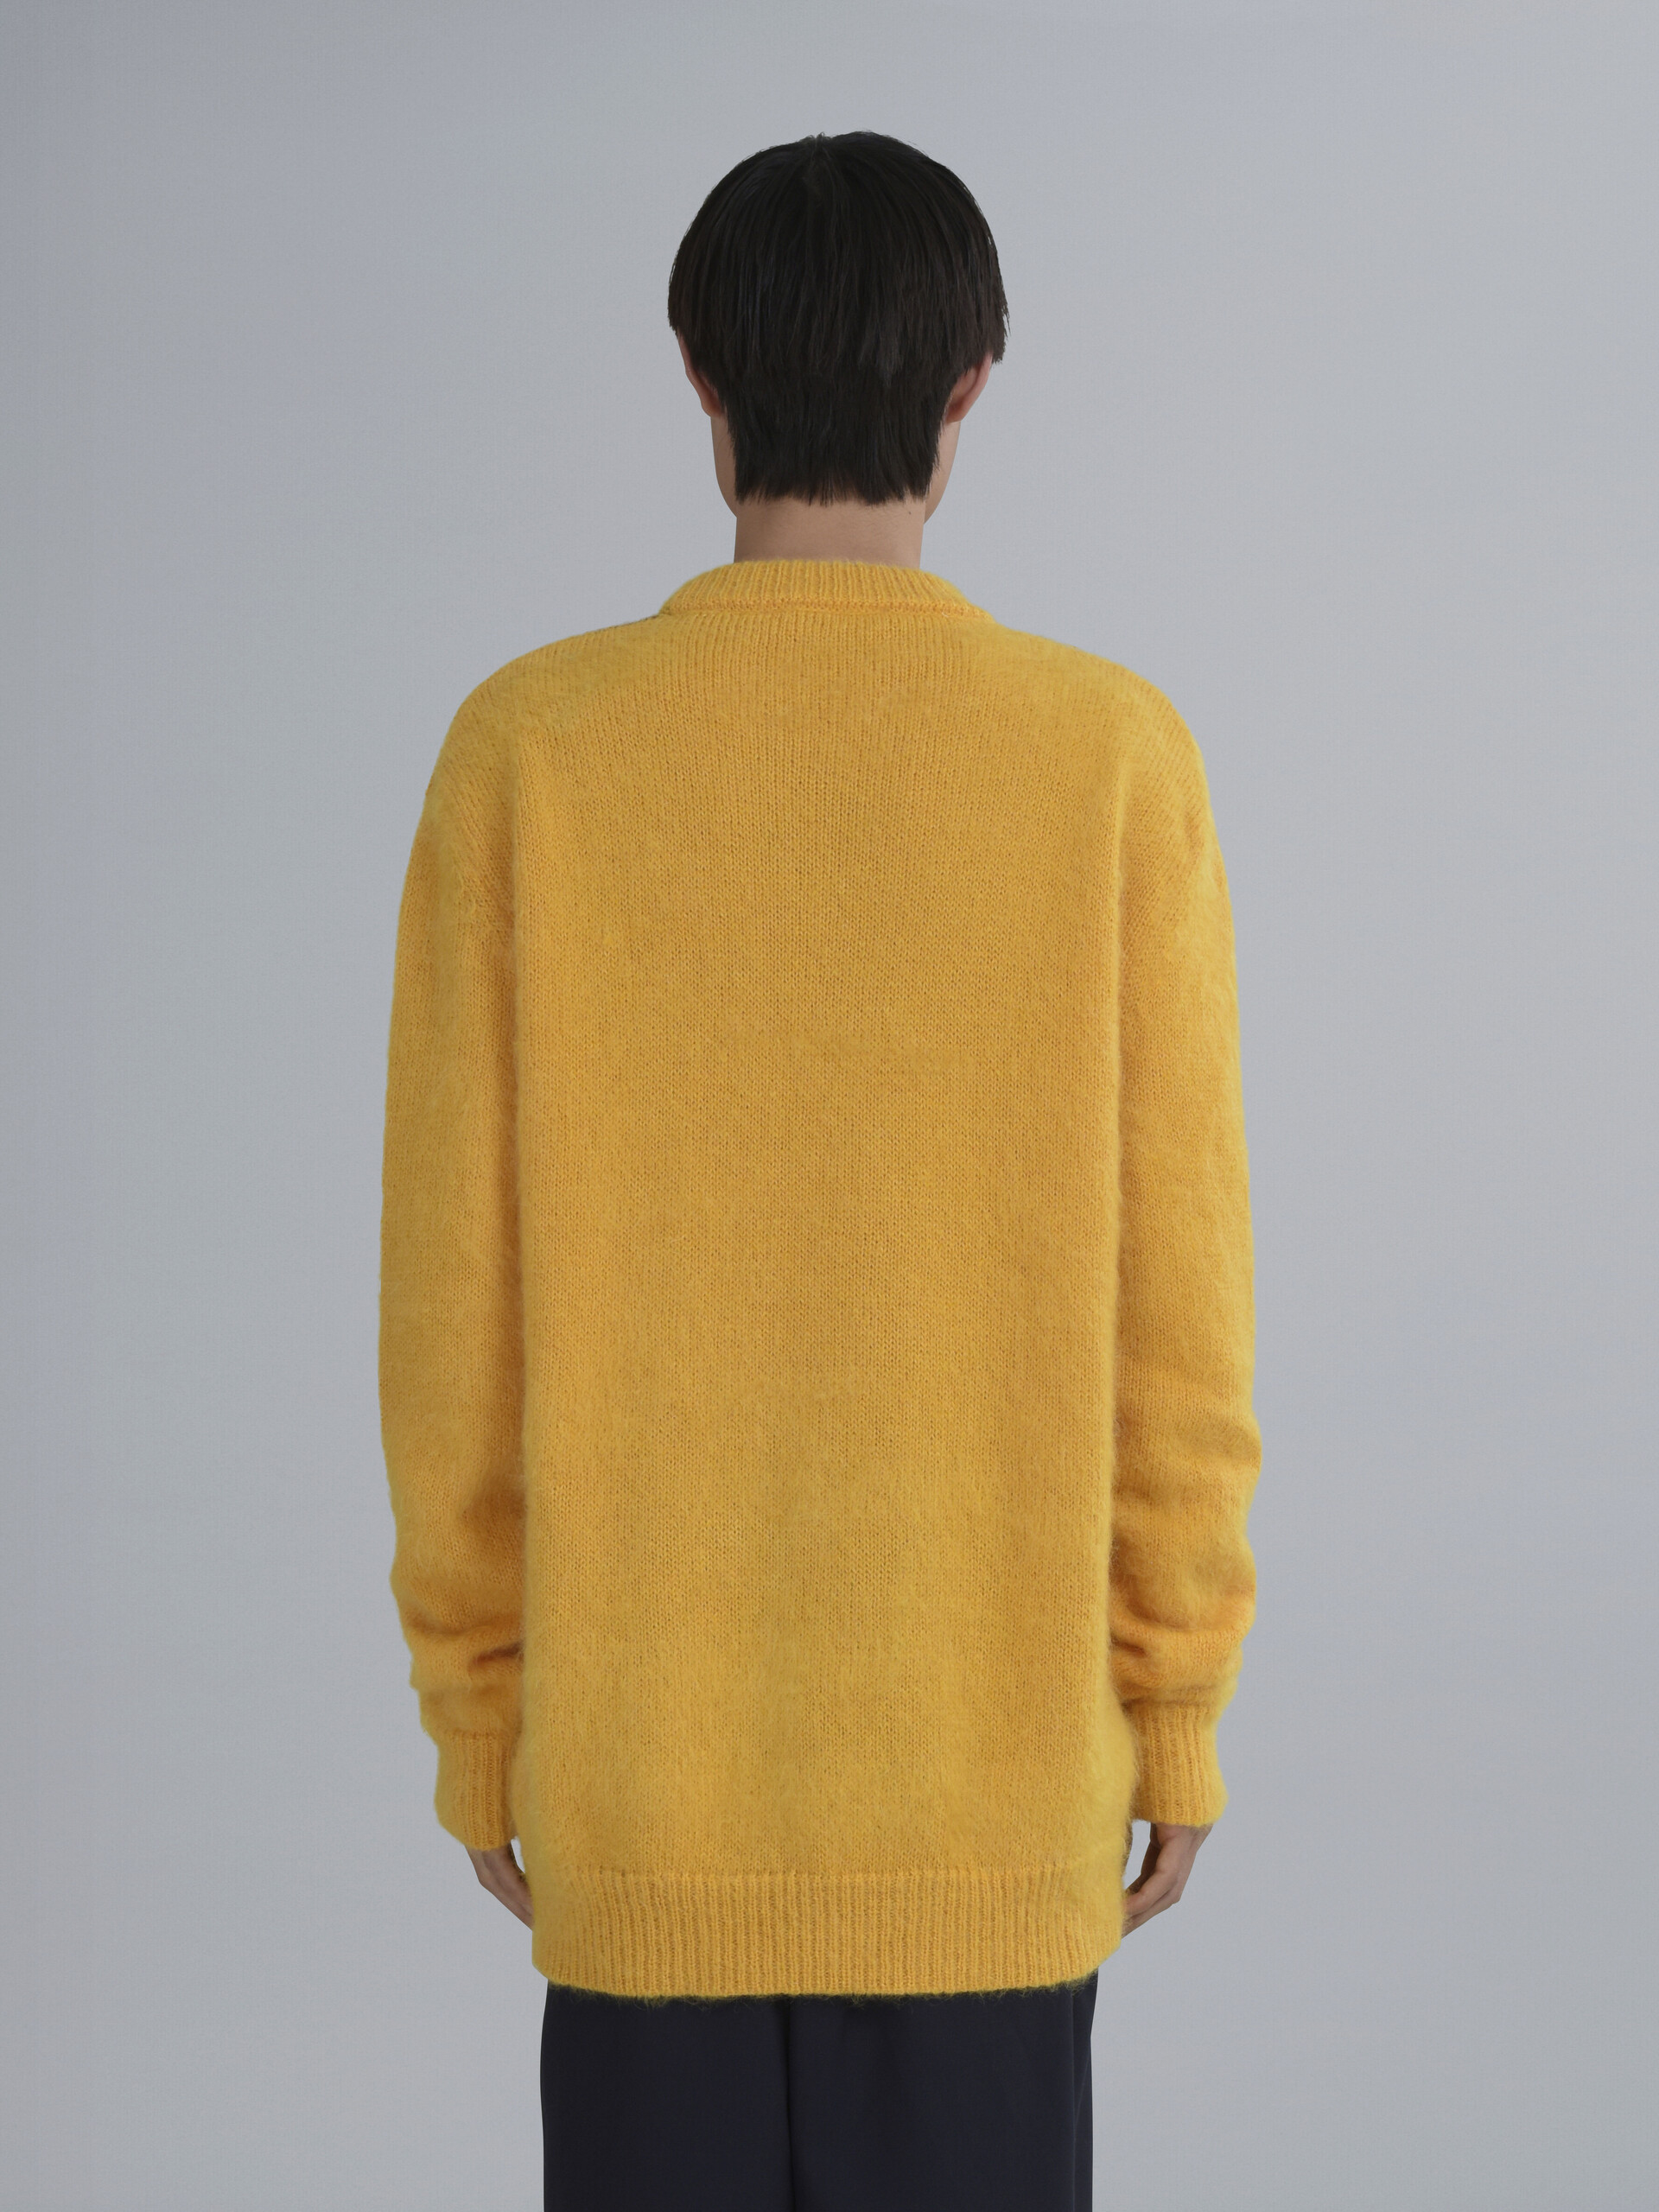 Naif Tiger inlay sweater - Pullovers - Image 3